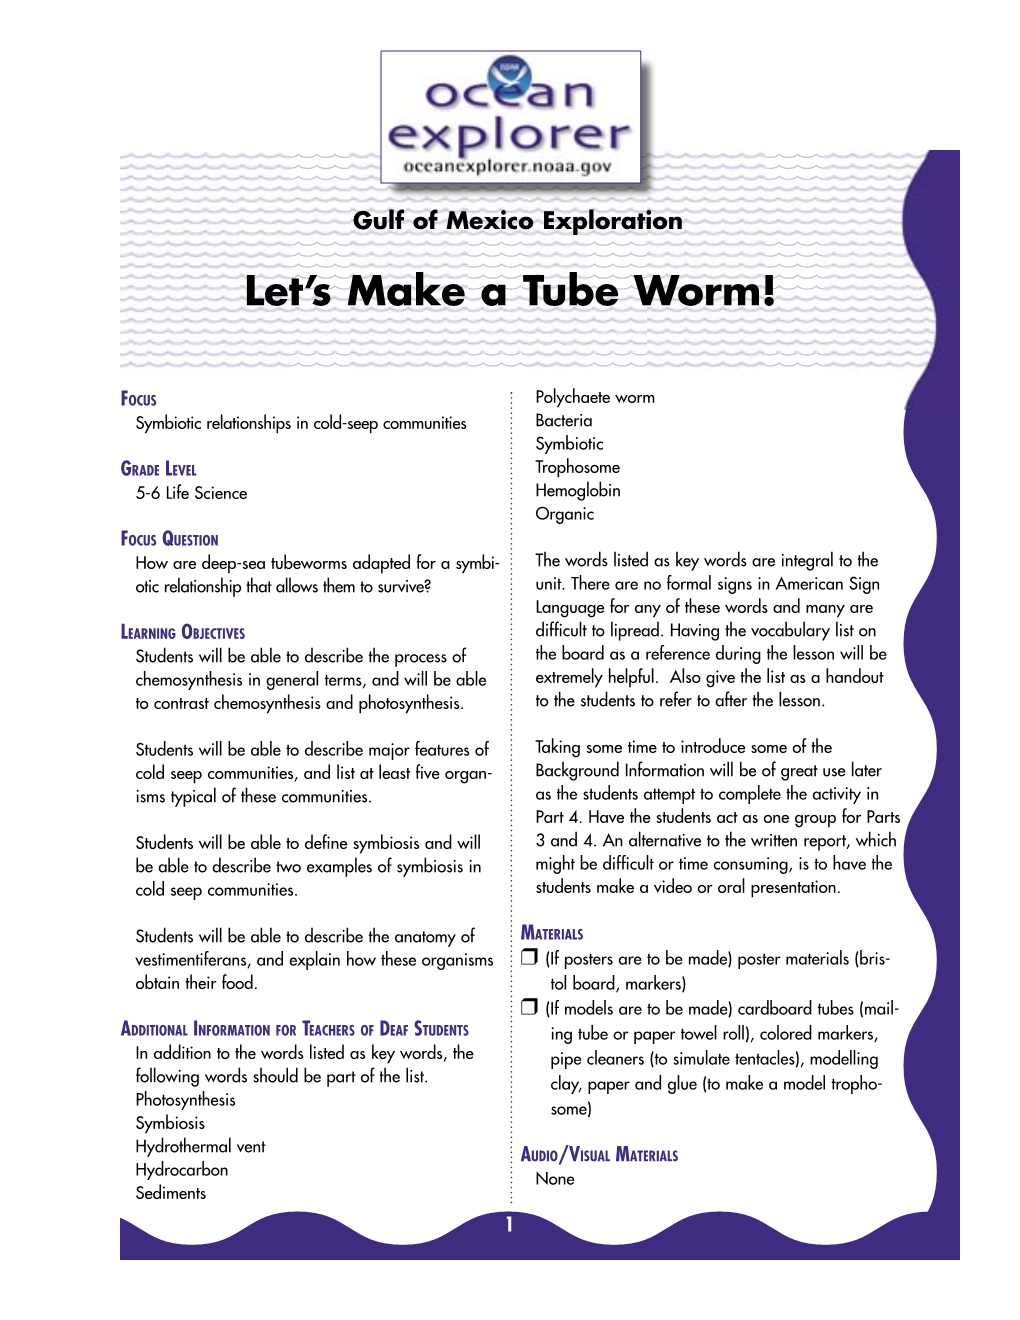 Let's Make a Tubeworm!